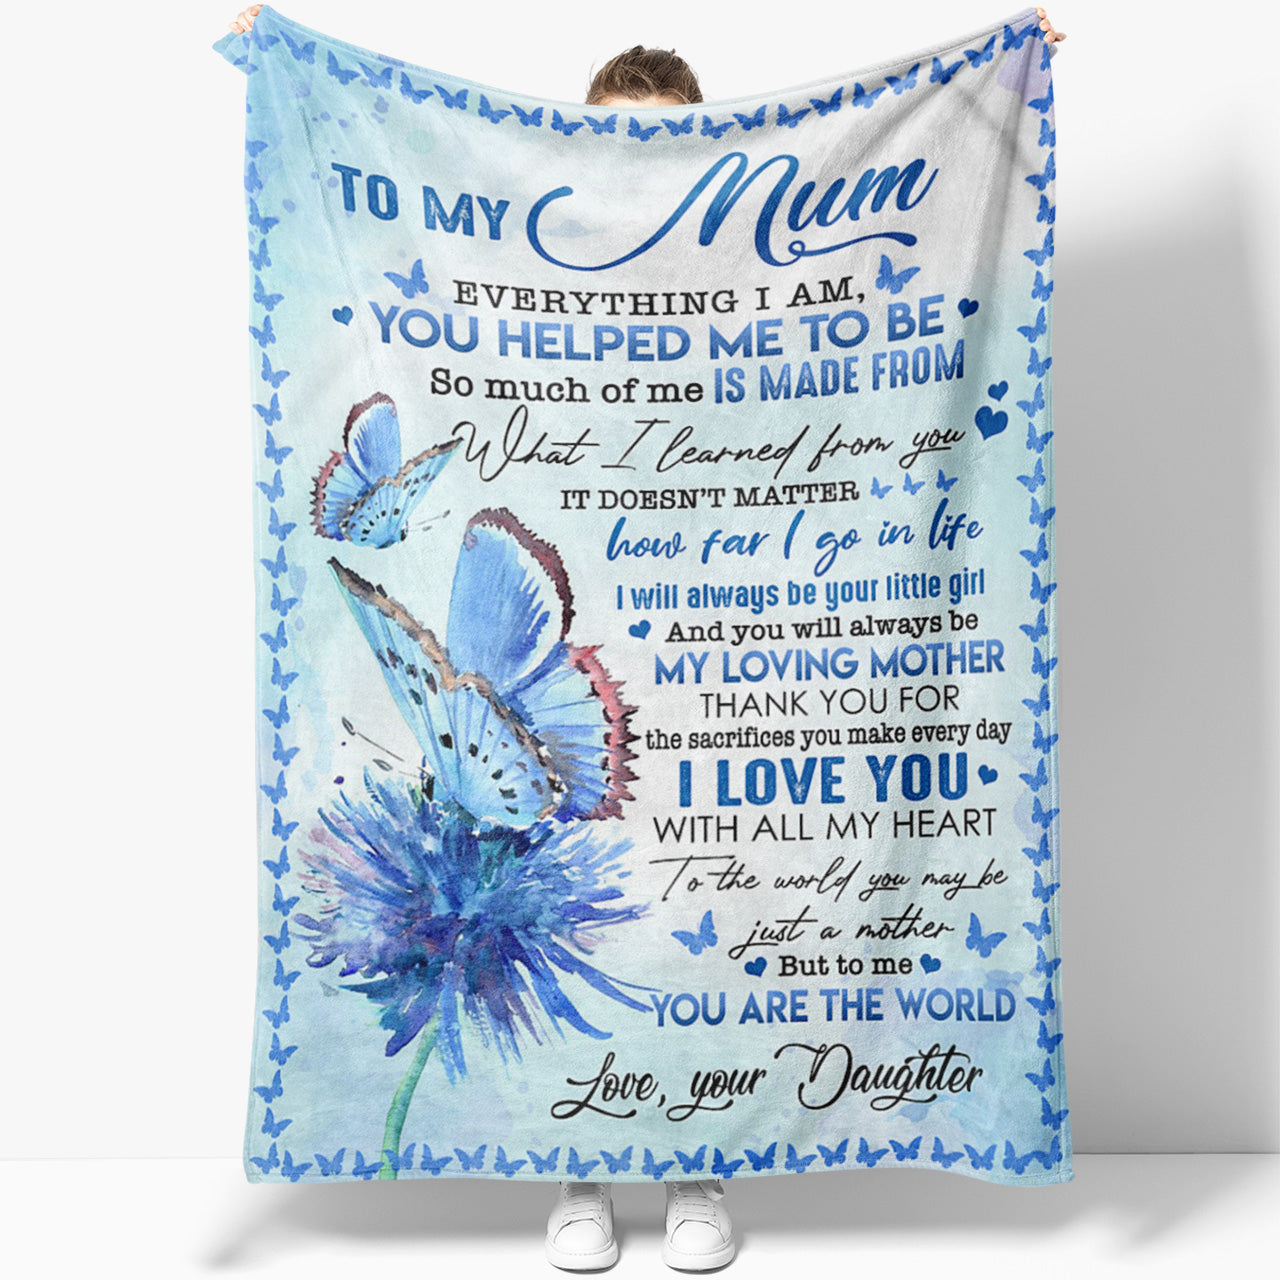 https://sweetfamilygift.com/cdn/shop/products/Blanket-Gift-Ideas-for-Mom-210206-B158-mk.jpg?v=1632295525